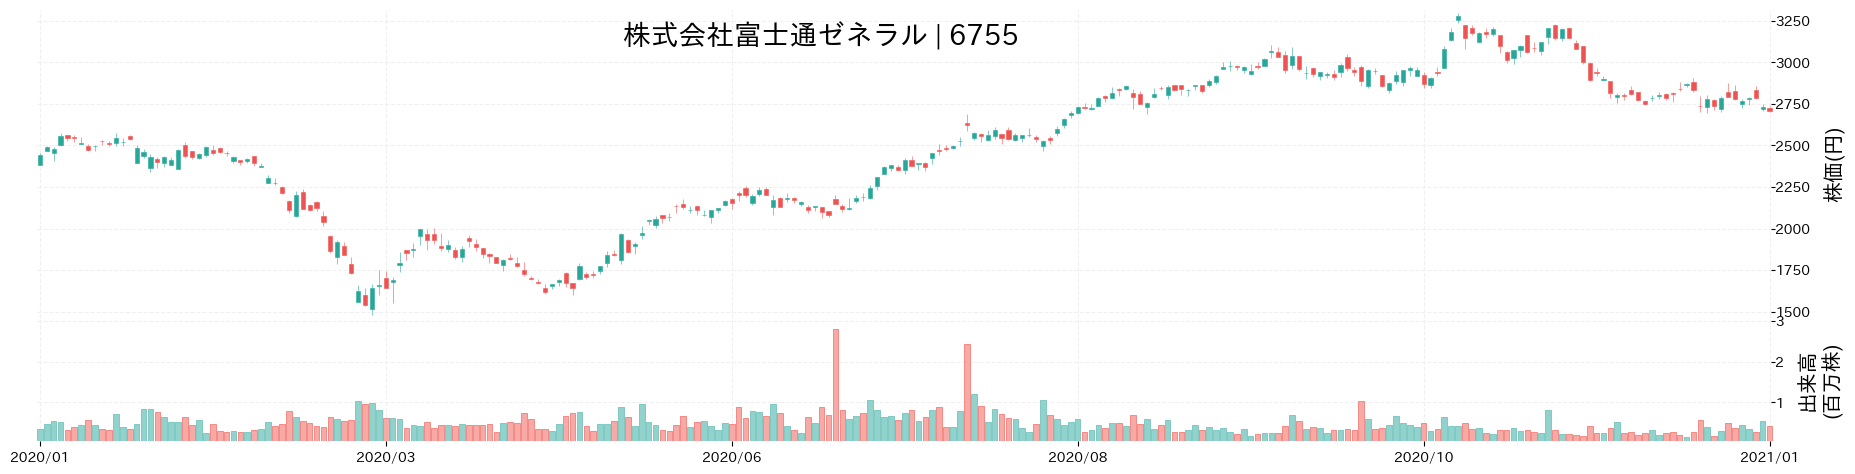 富士通ゼネラルの株価推移(2020)